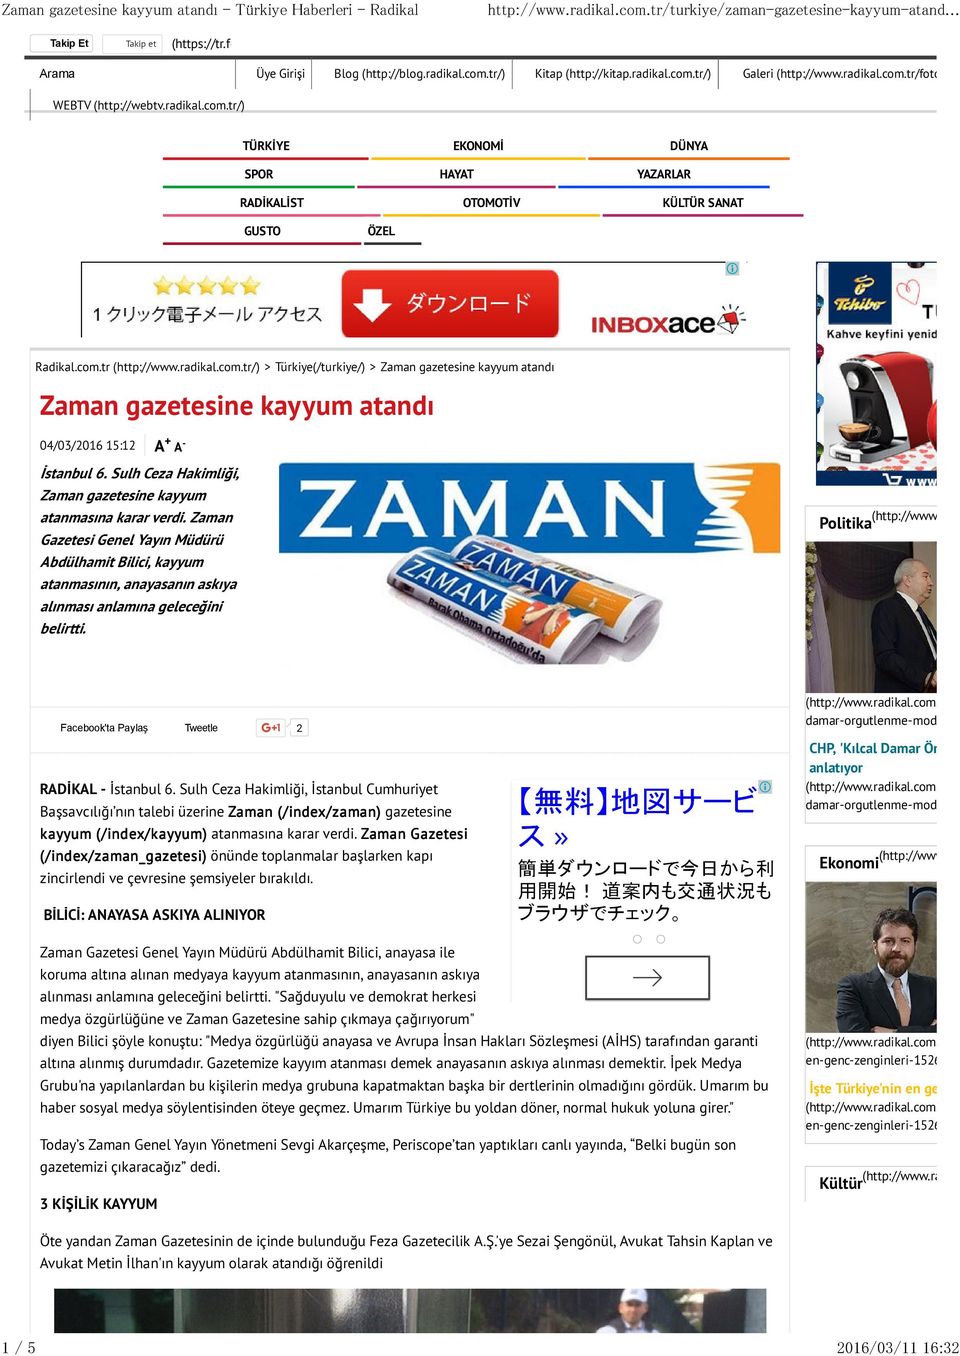 Zaman Gazetesi Genel Yayın Müdürü Abdülhamit Bilici, kayyum atanmasının, anayasanın askıya alınması anlamına geleceğini belirtti. Politika (http://www.